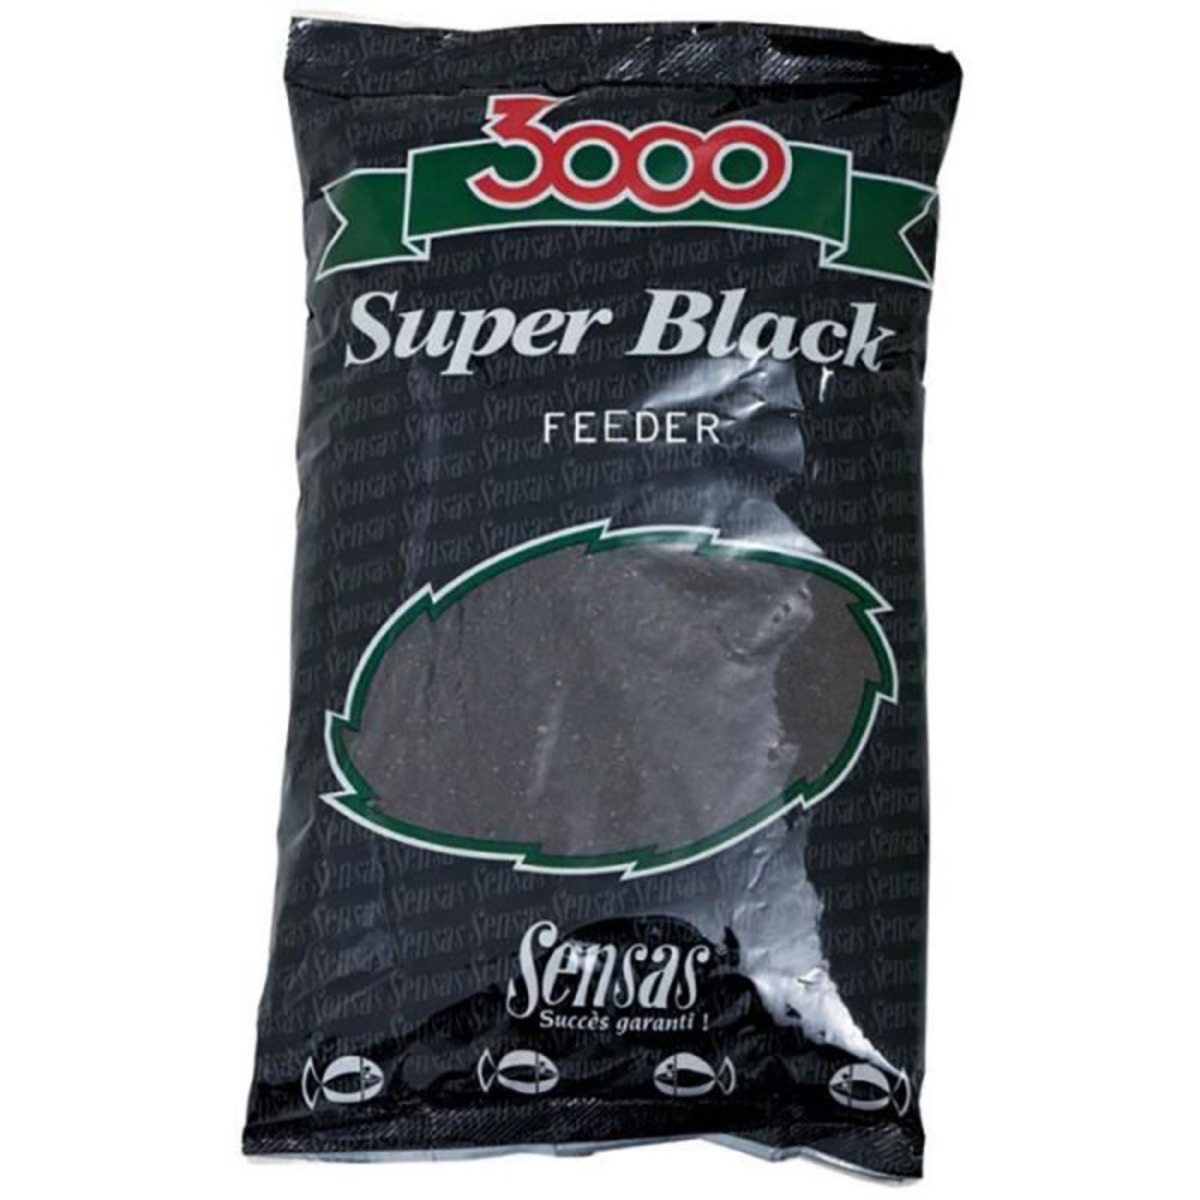 Sensas 3000 Super Black Feeder - 1 kg